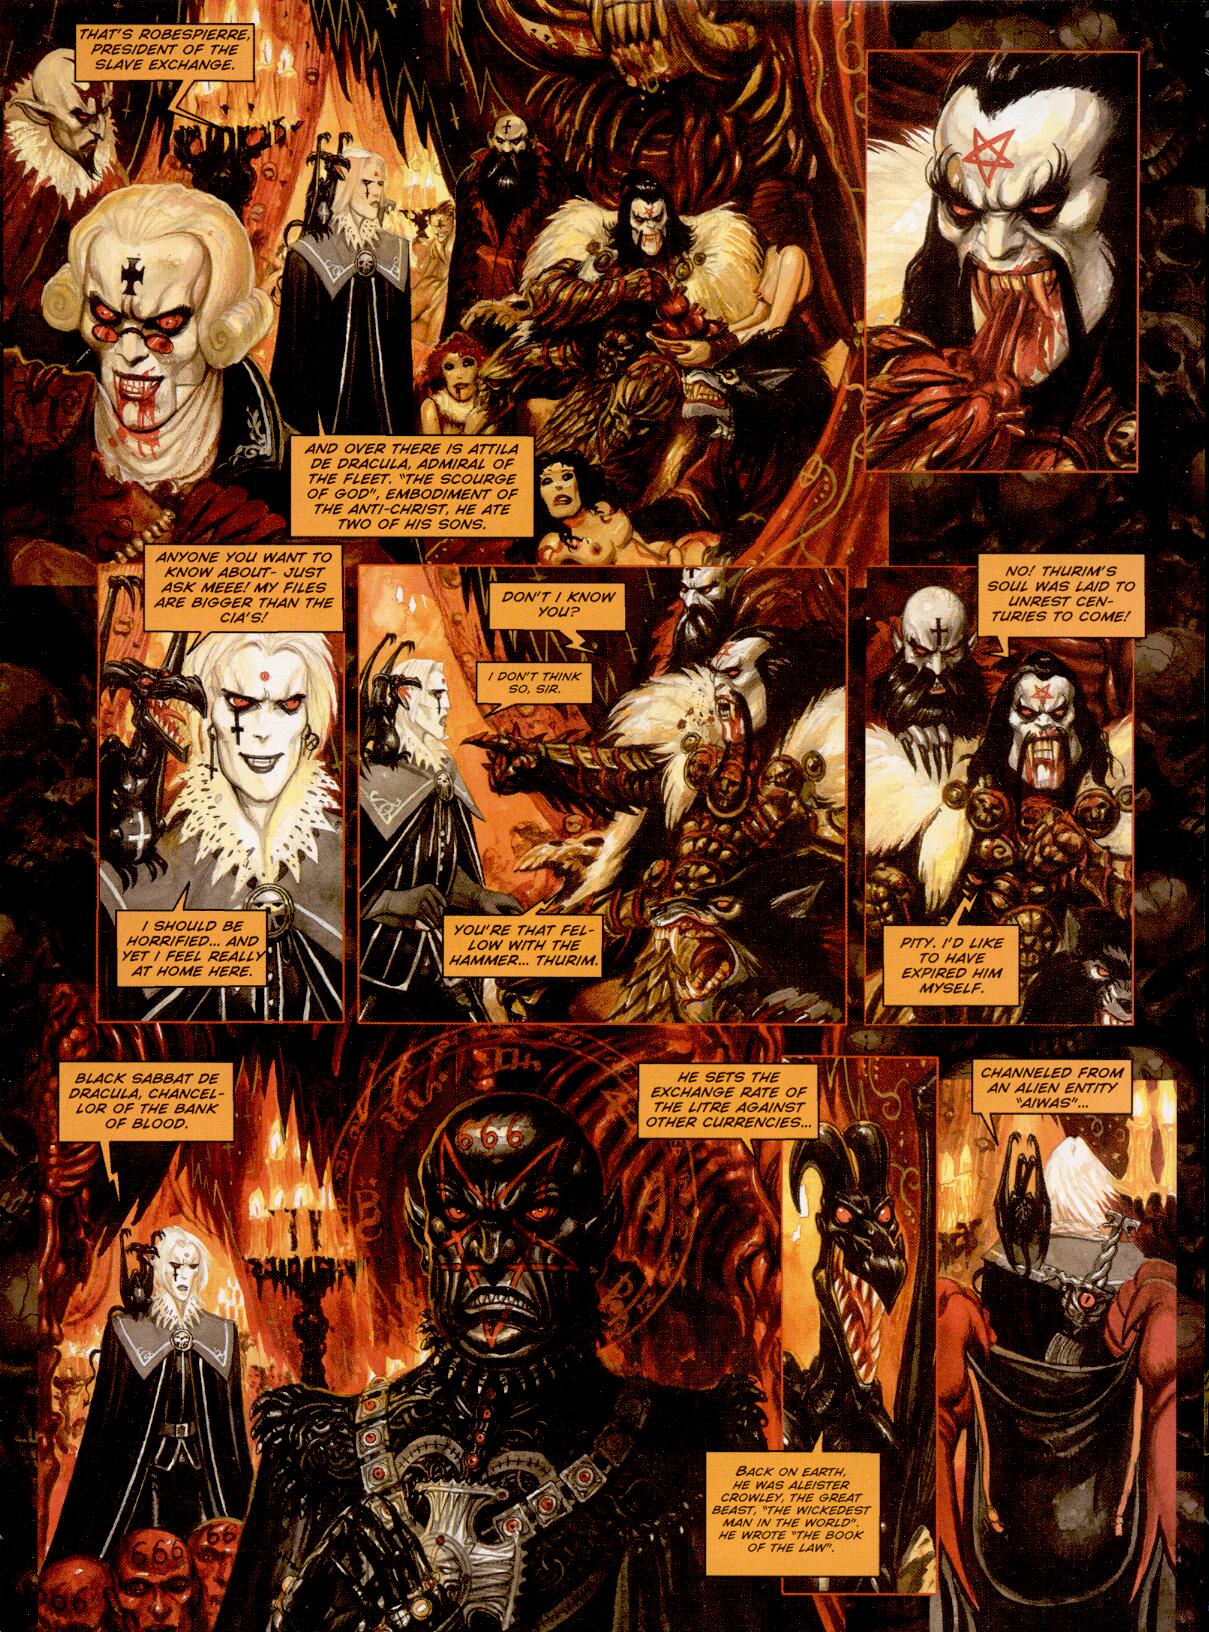 Requiem: Chevalier Vampire HD wallpapers, Desktop wallpaper - most viewed